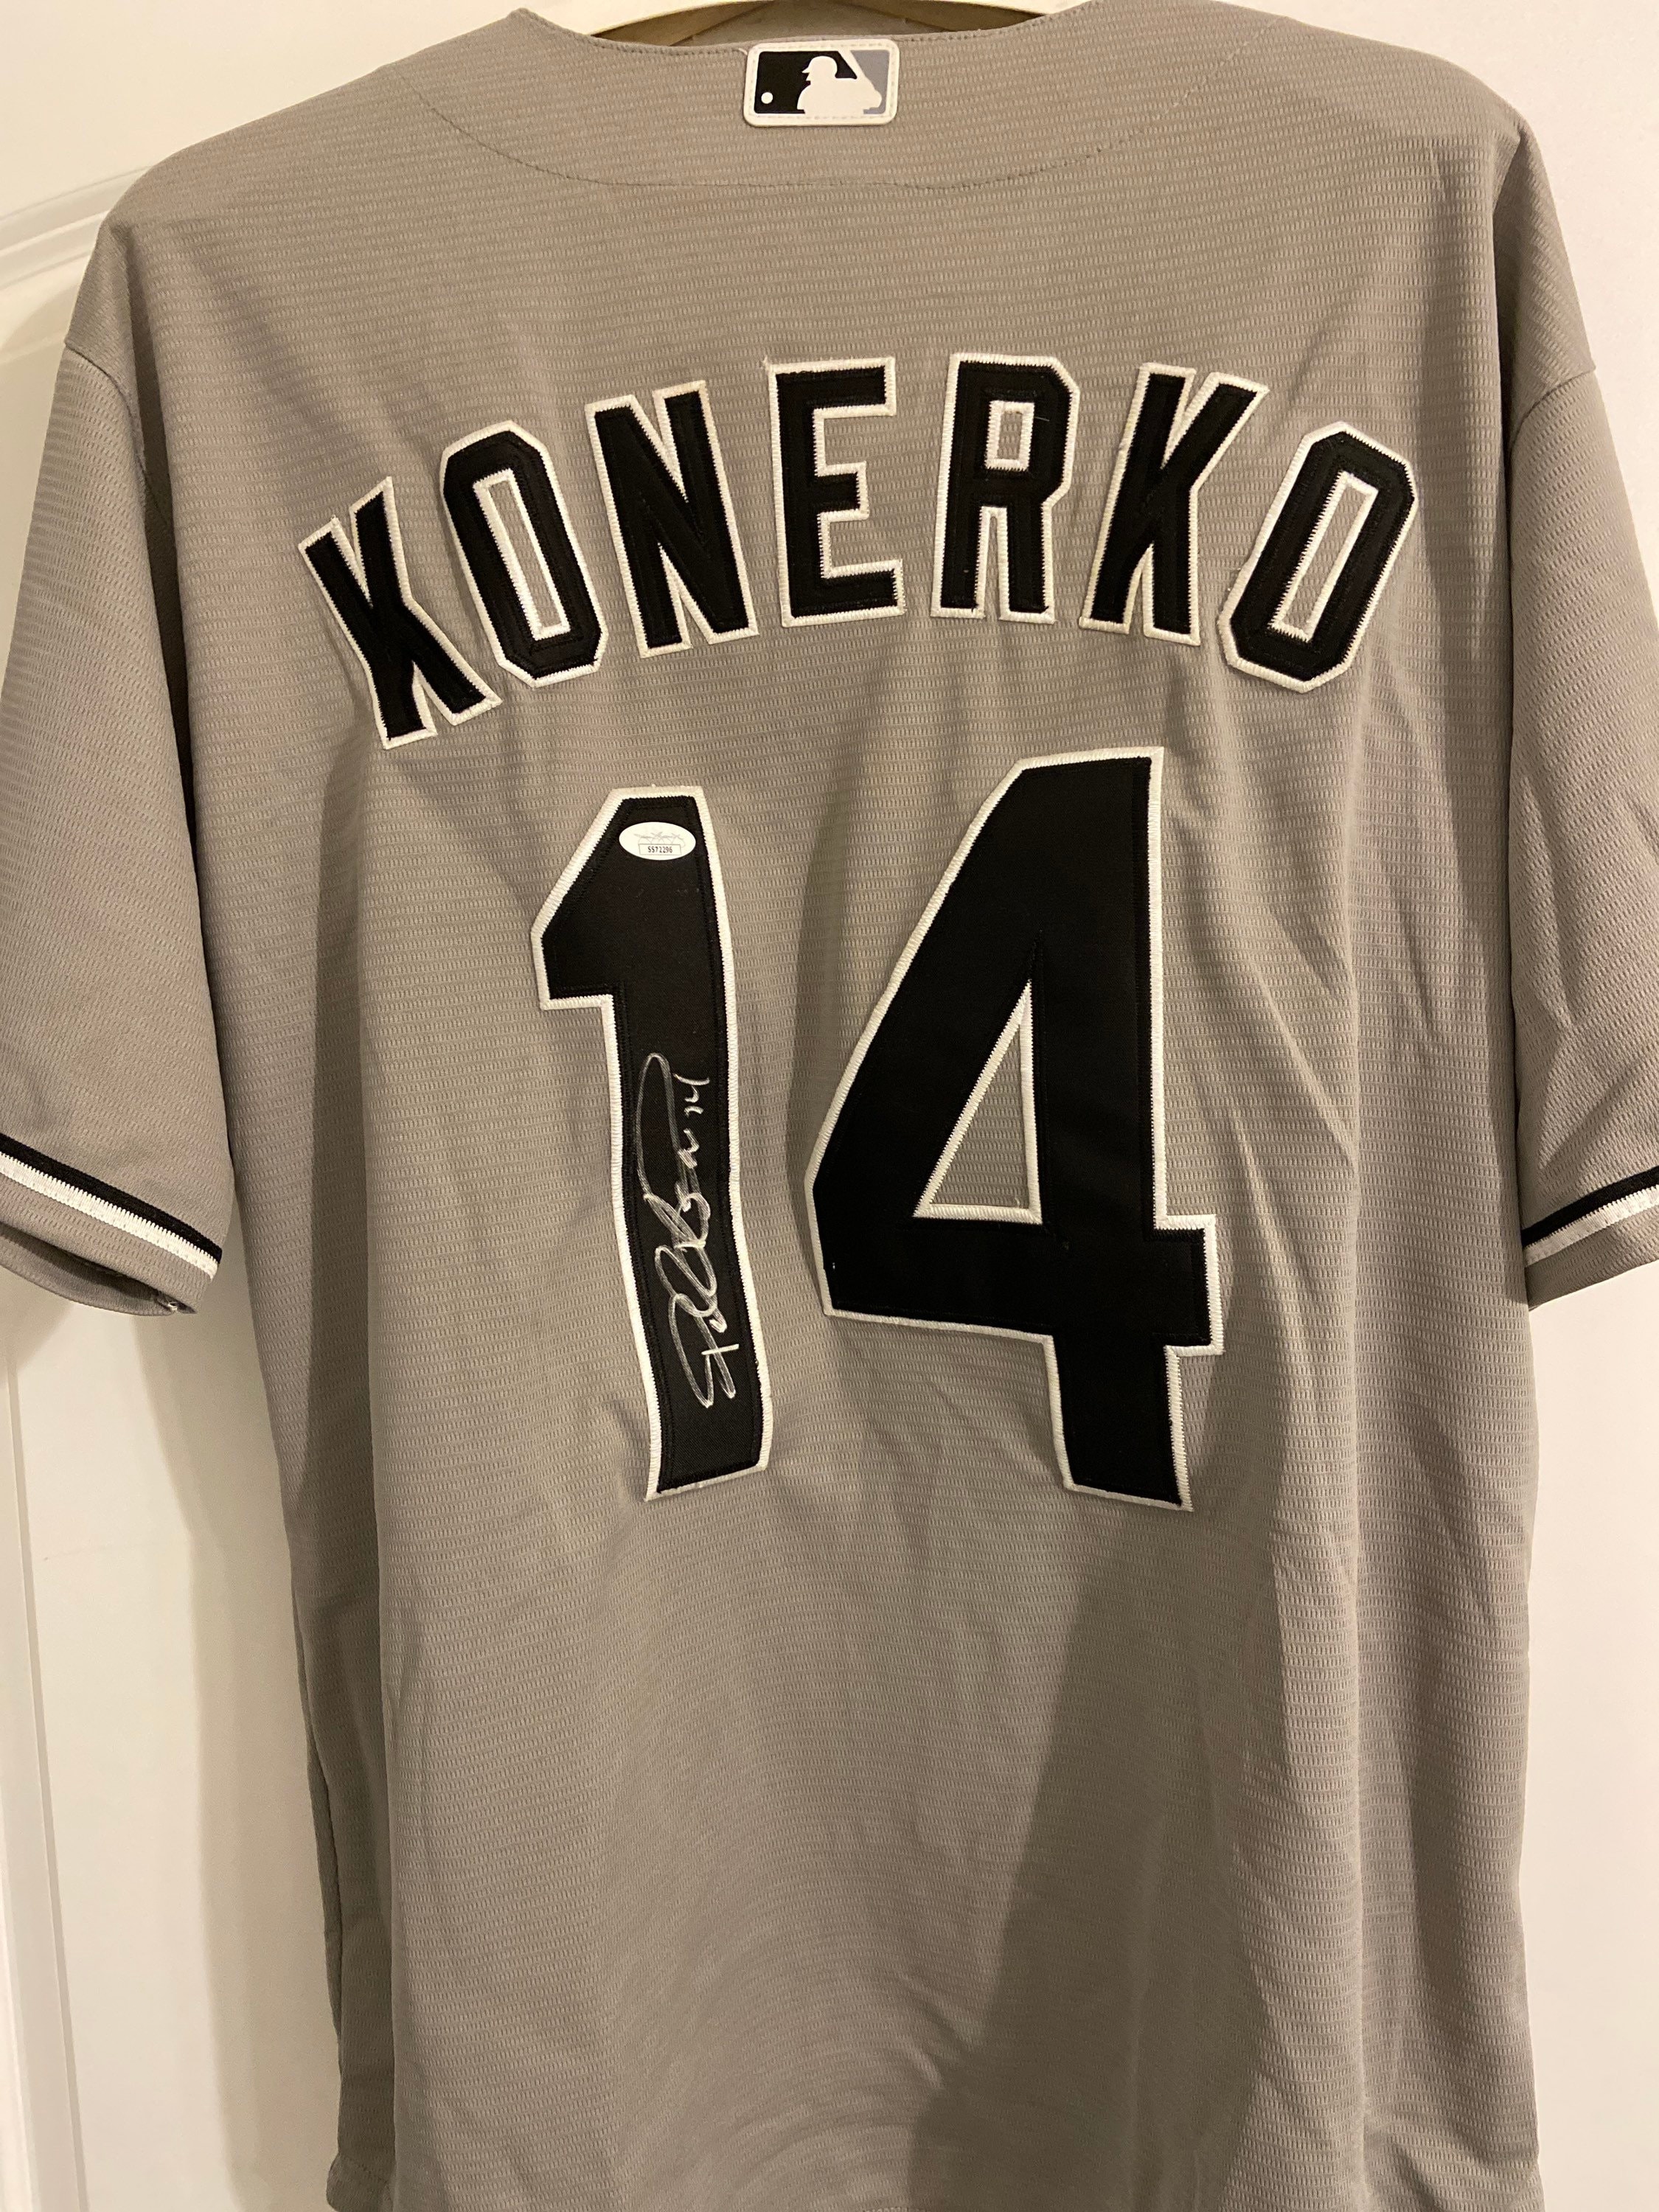 Paul Konerko Signed XL Majestic White Sox Jersey With Matching 